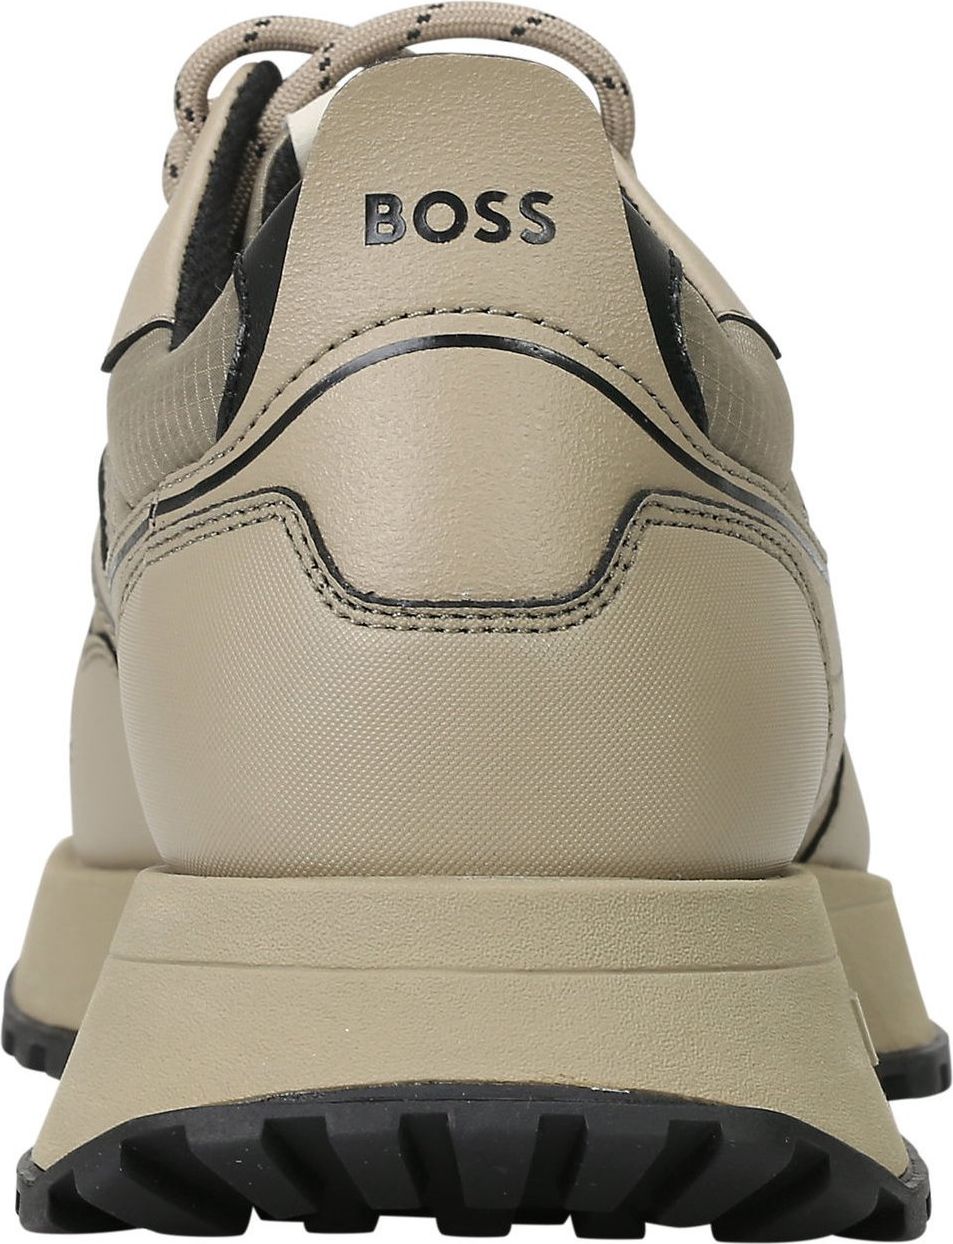 Hugo Boss Boss Heren Sneaker Bruin 50498913/263 JONAH Bruin